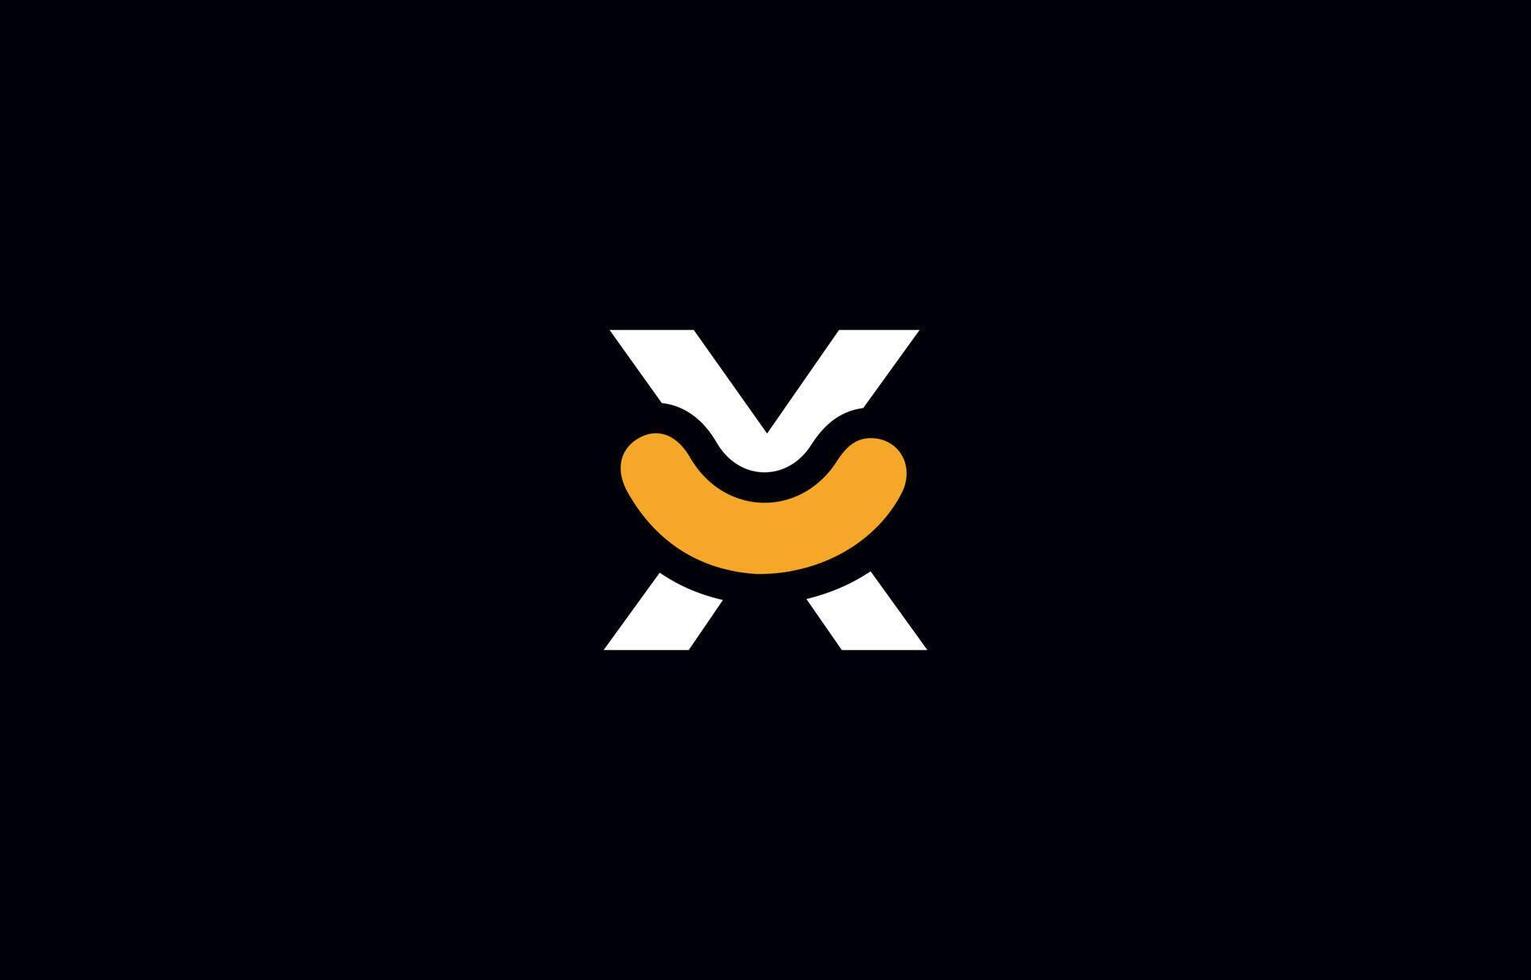 modelo de vetor de design de logotipo de letra x inicial. monograma e ilustração criativa do ícone das letras do alfabeto